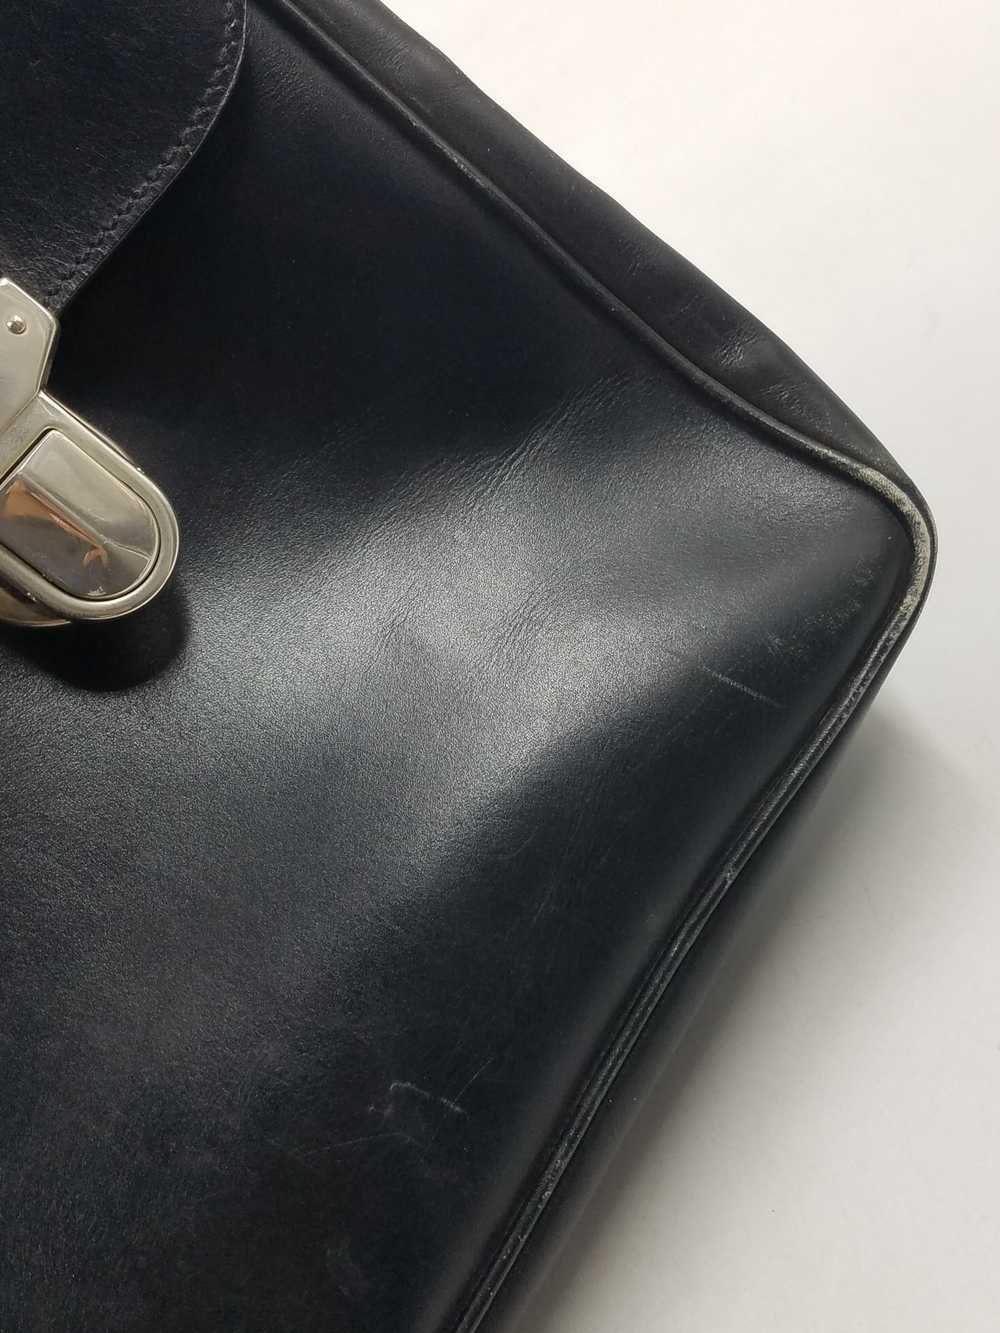 Authentic Prada Black Leather Briefcase - image 8